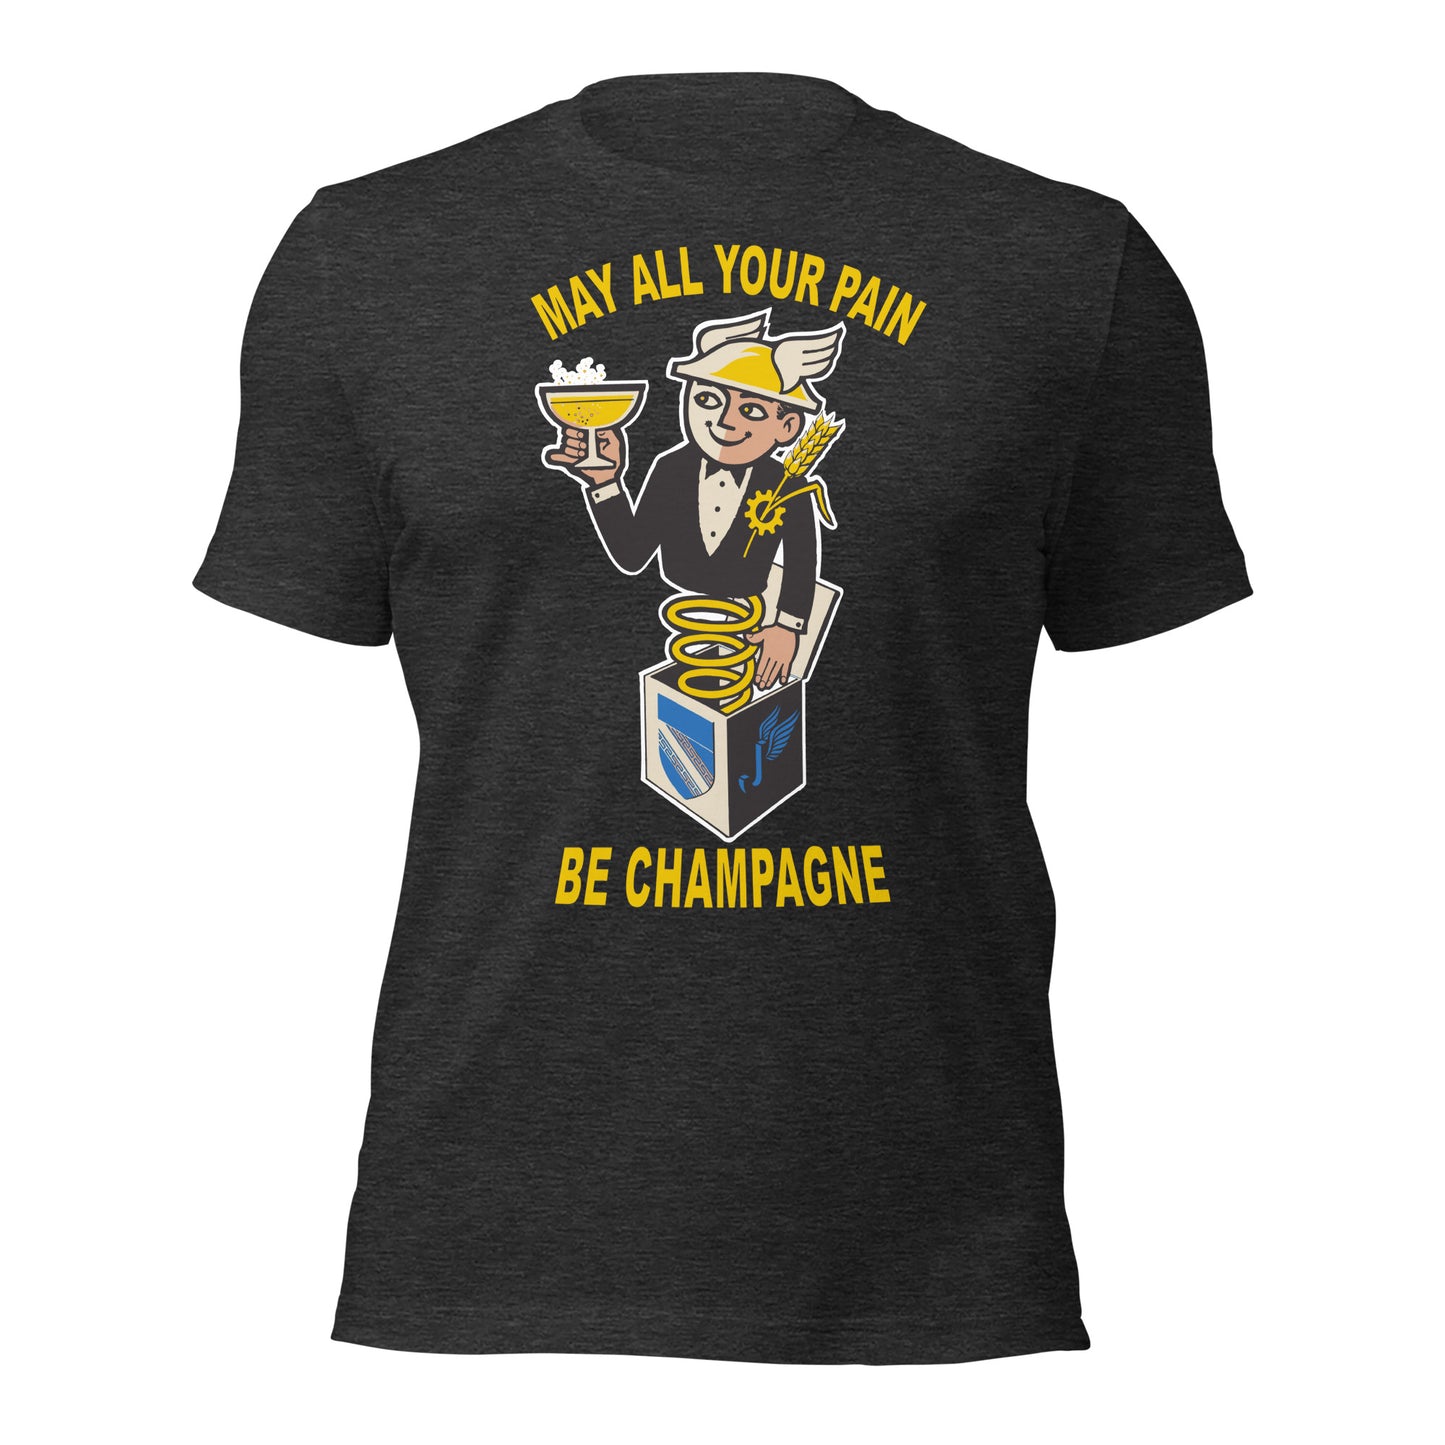 CHAMPAGNE / CHAM-PAIN - V1 BELLA CANVAS - Unisex t-shirt